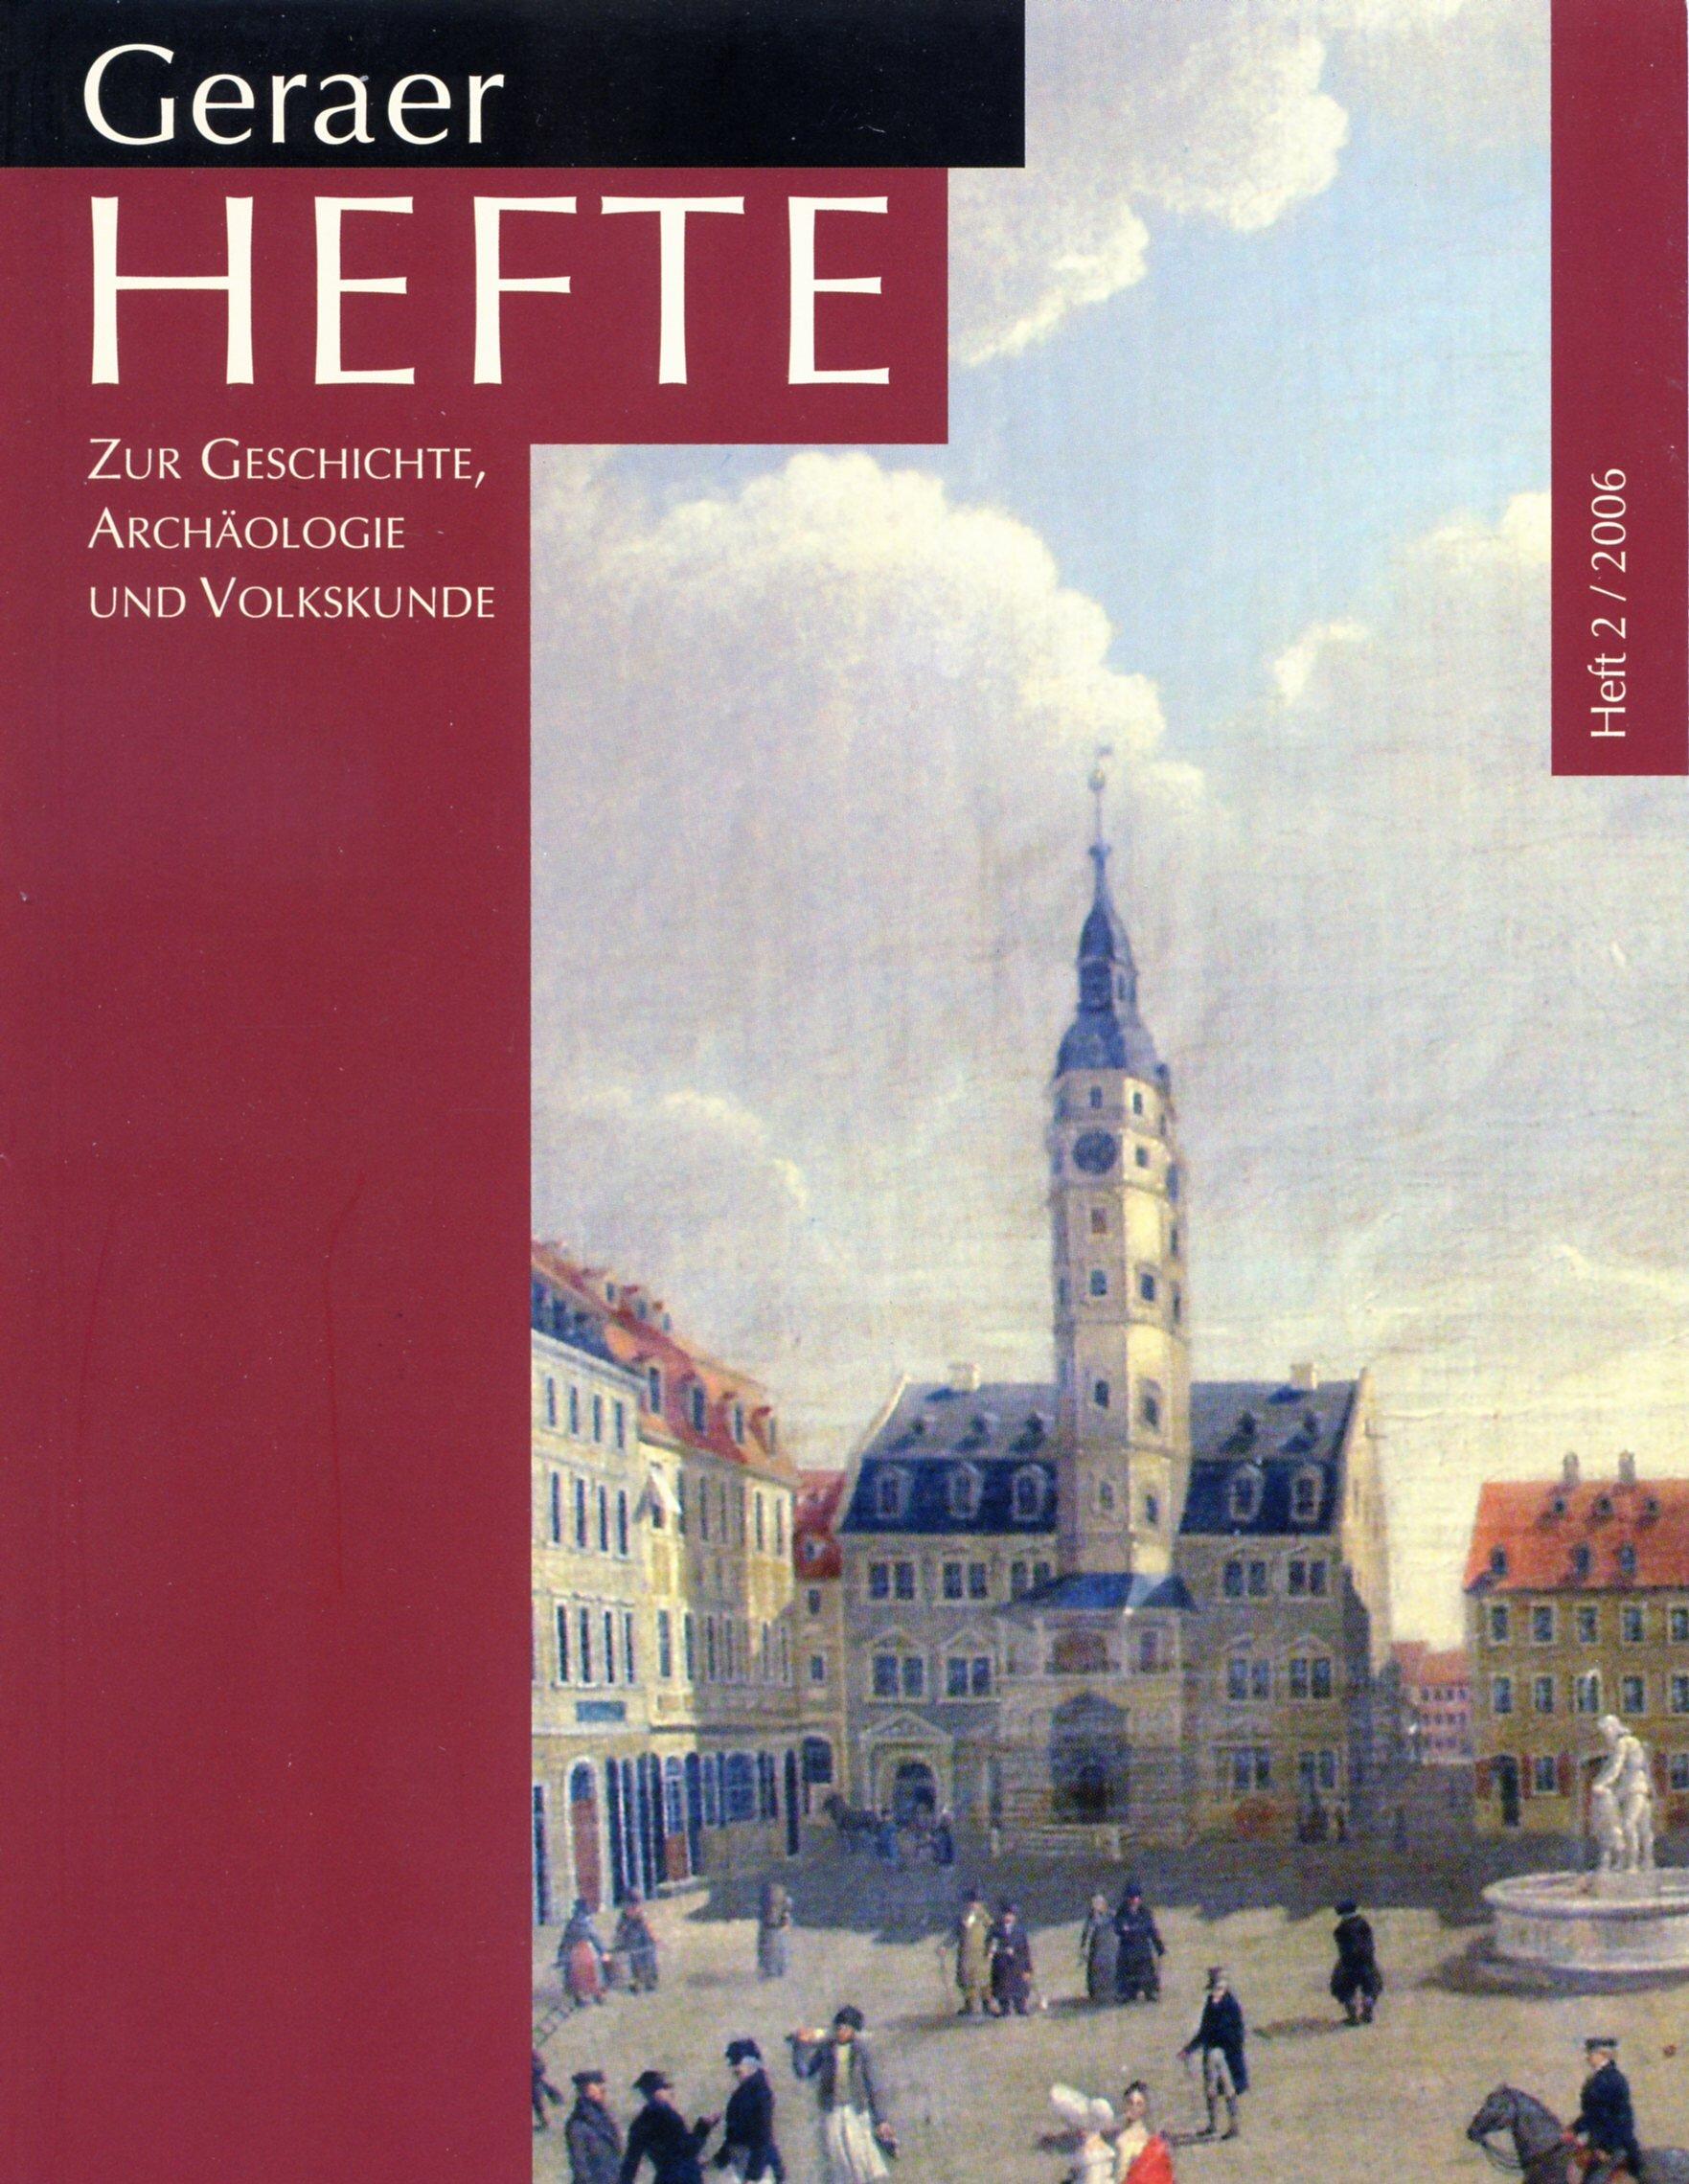 schwarzes, dunkelrotes Cover Geraer Hefte 2 mit Gemälde des Marktplatzes mit altem Rathaus und Simsonbrunnen